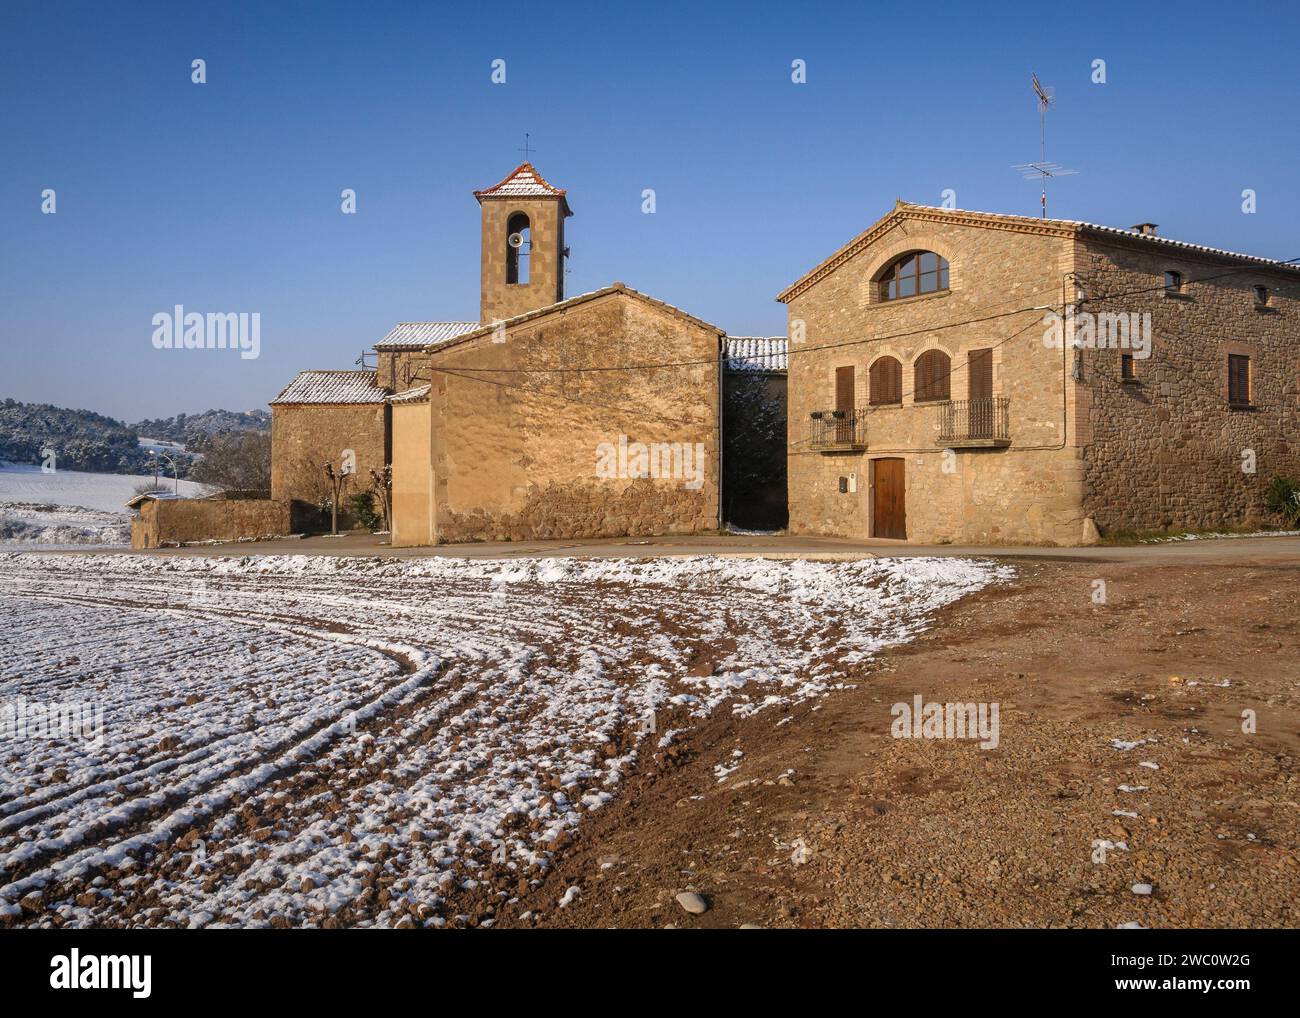 Village of El Mujal, after a winter snowfall (Navàs, Barcelona, Catalonia, Spain) ESP: Aldea de El Mujal, tras una nevada de invierno (Navàs, BCN) Stock Photo